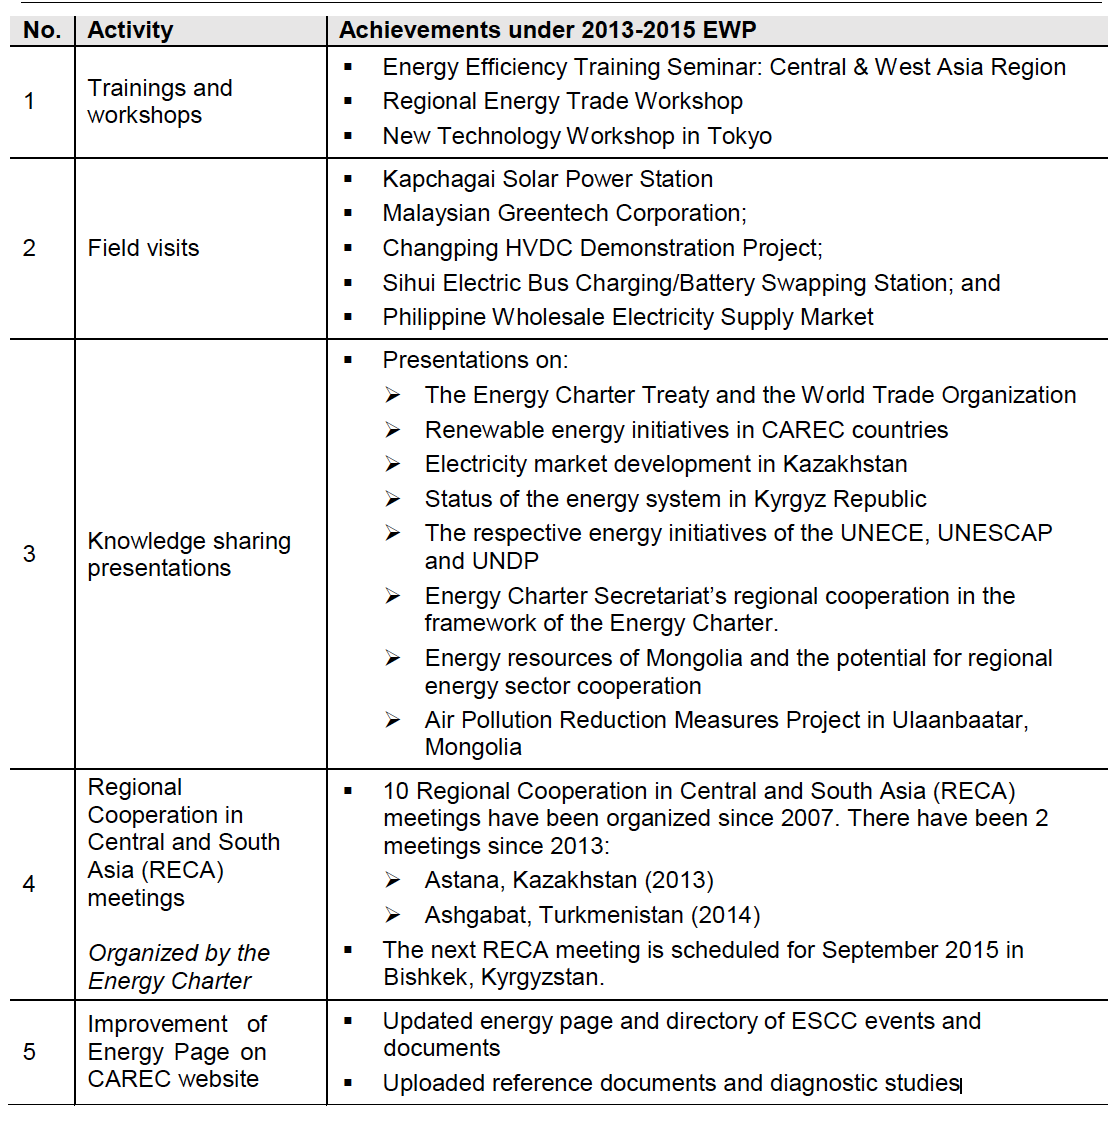 Table 6: Achievements under 2013–2015 EWP: Element 6